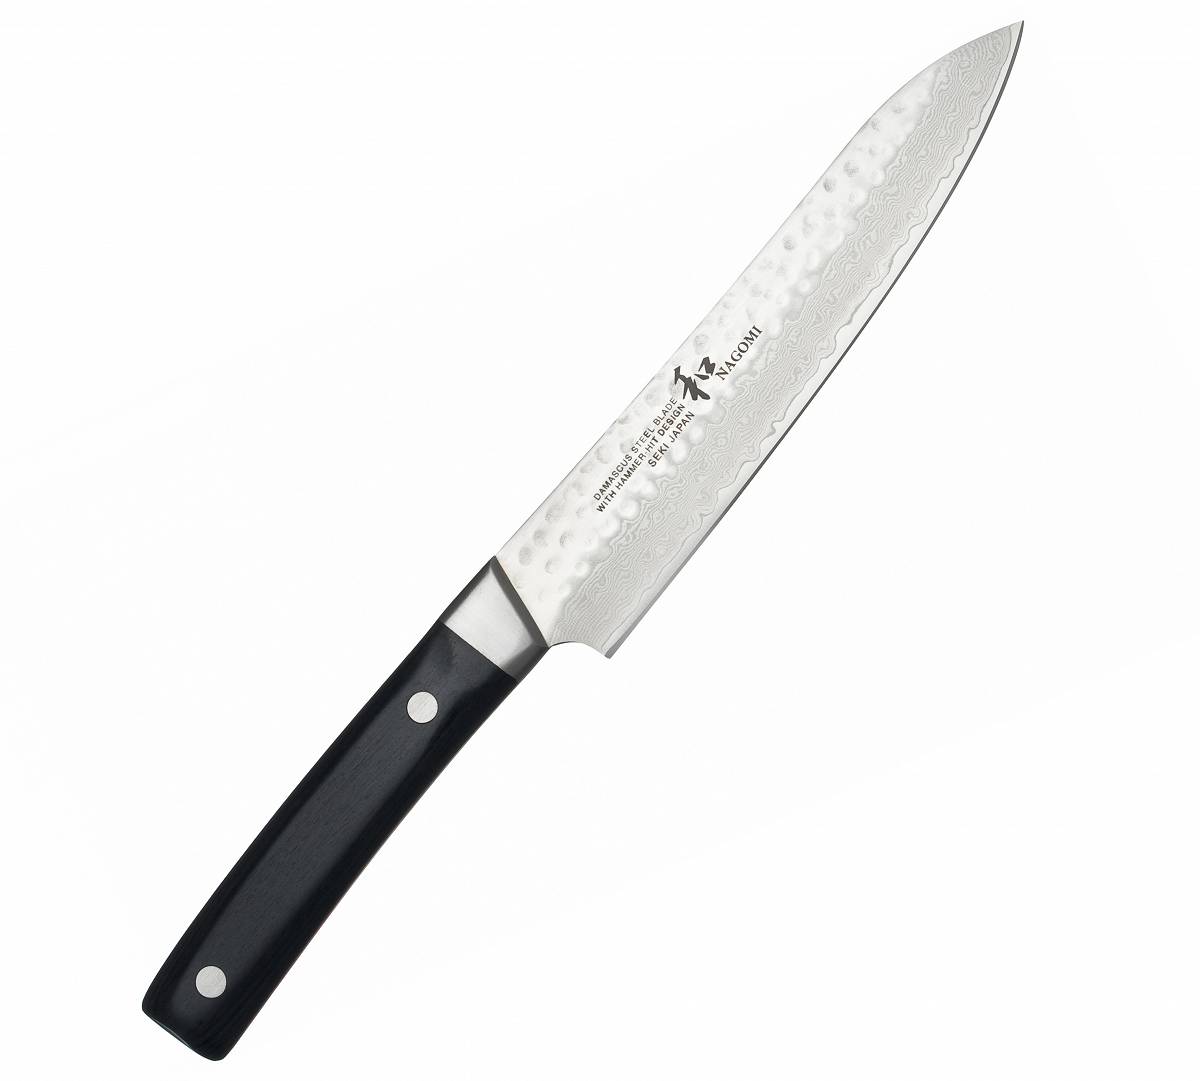 Nagomi Kuro Nóż uniwersalny 14cm